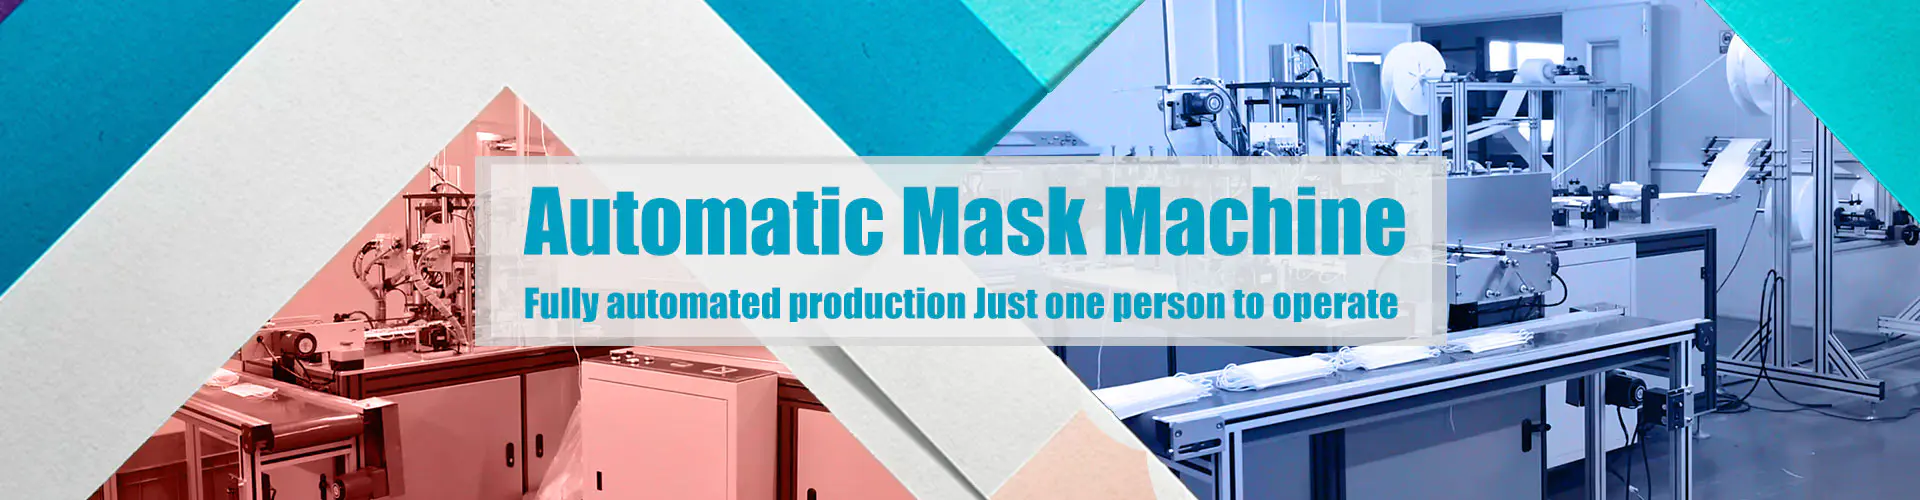 Automatic Mask Machine